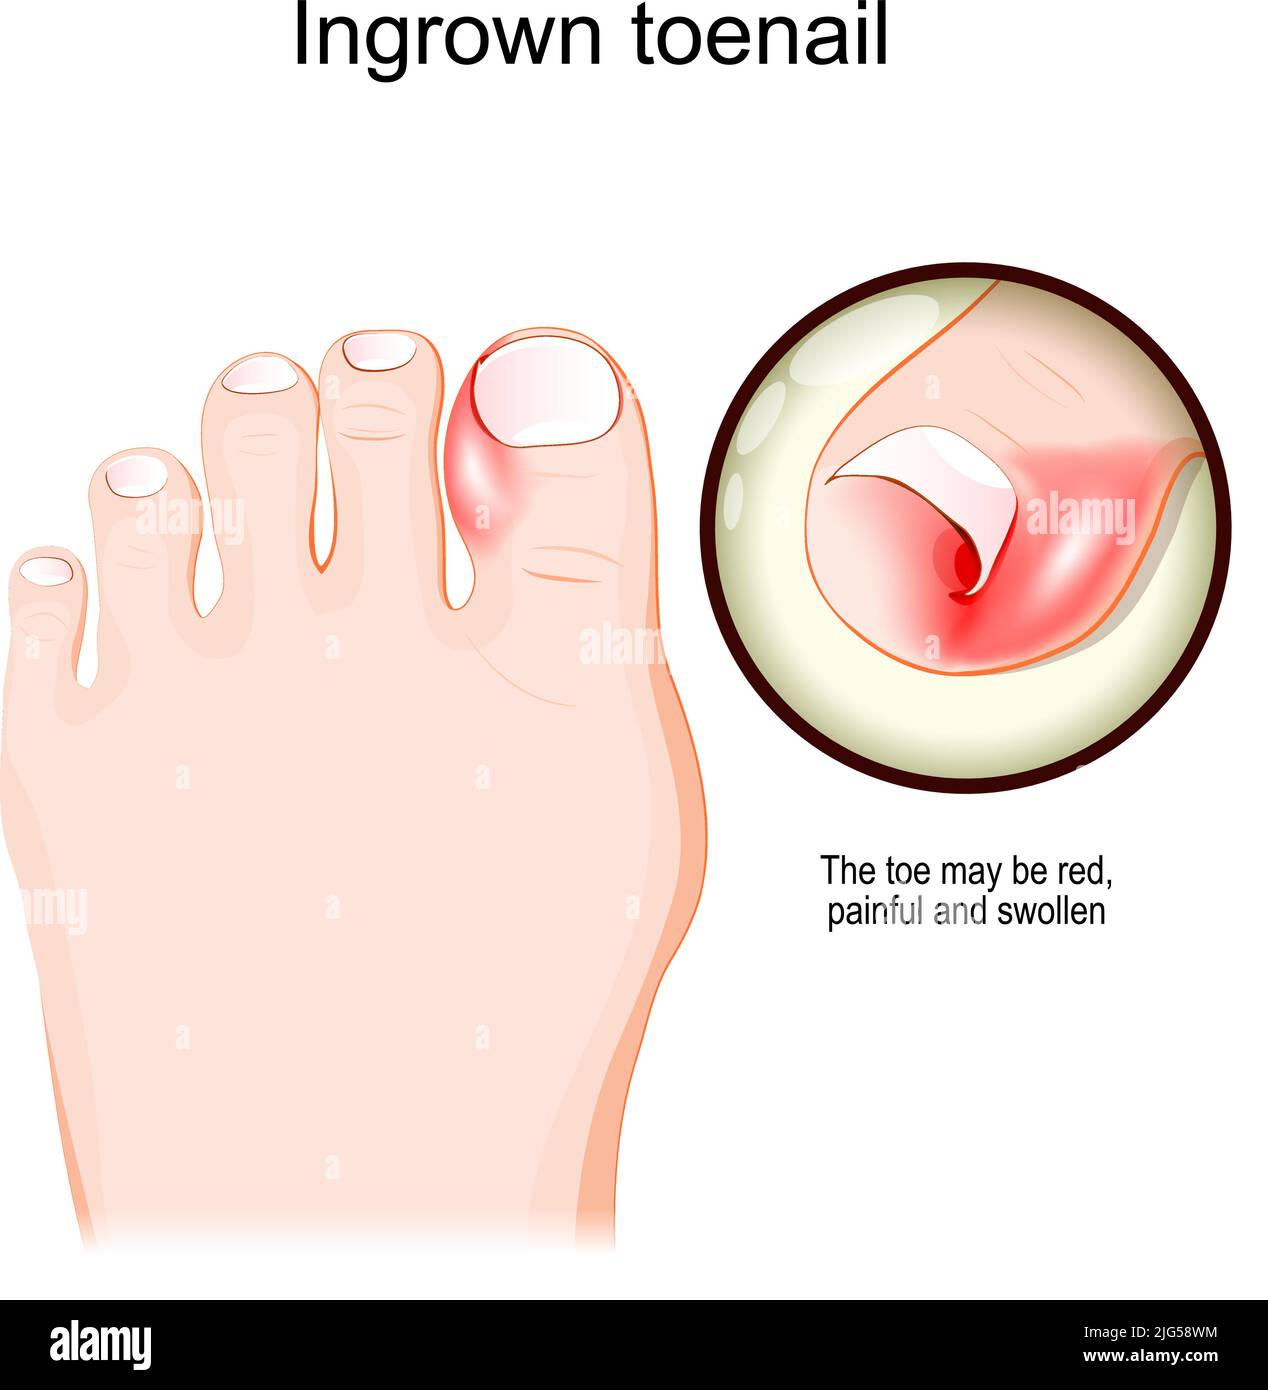 Eingewachsene Zehennagel. Menschlicher Fuß. Nahaufnahme von roten, schmerzhaften und geschwollenen Zehen. vektordarstellung Stock Vektor